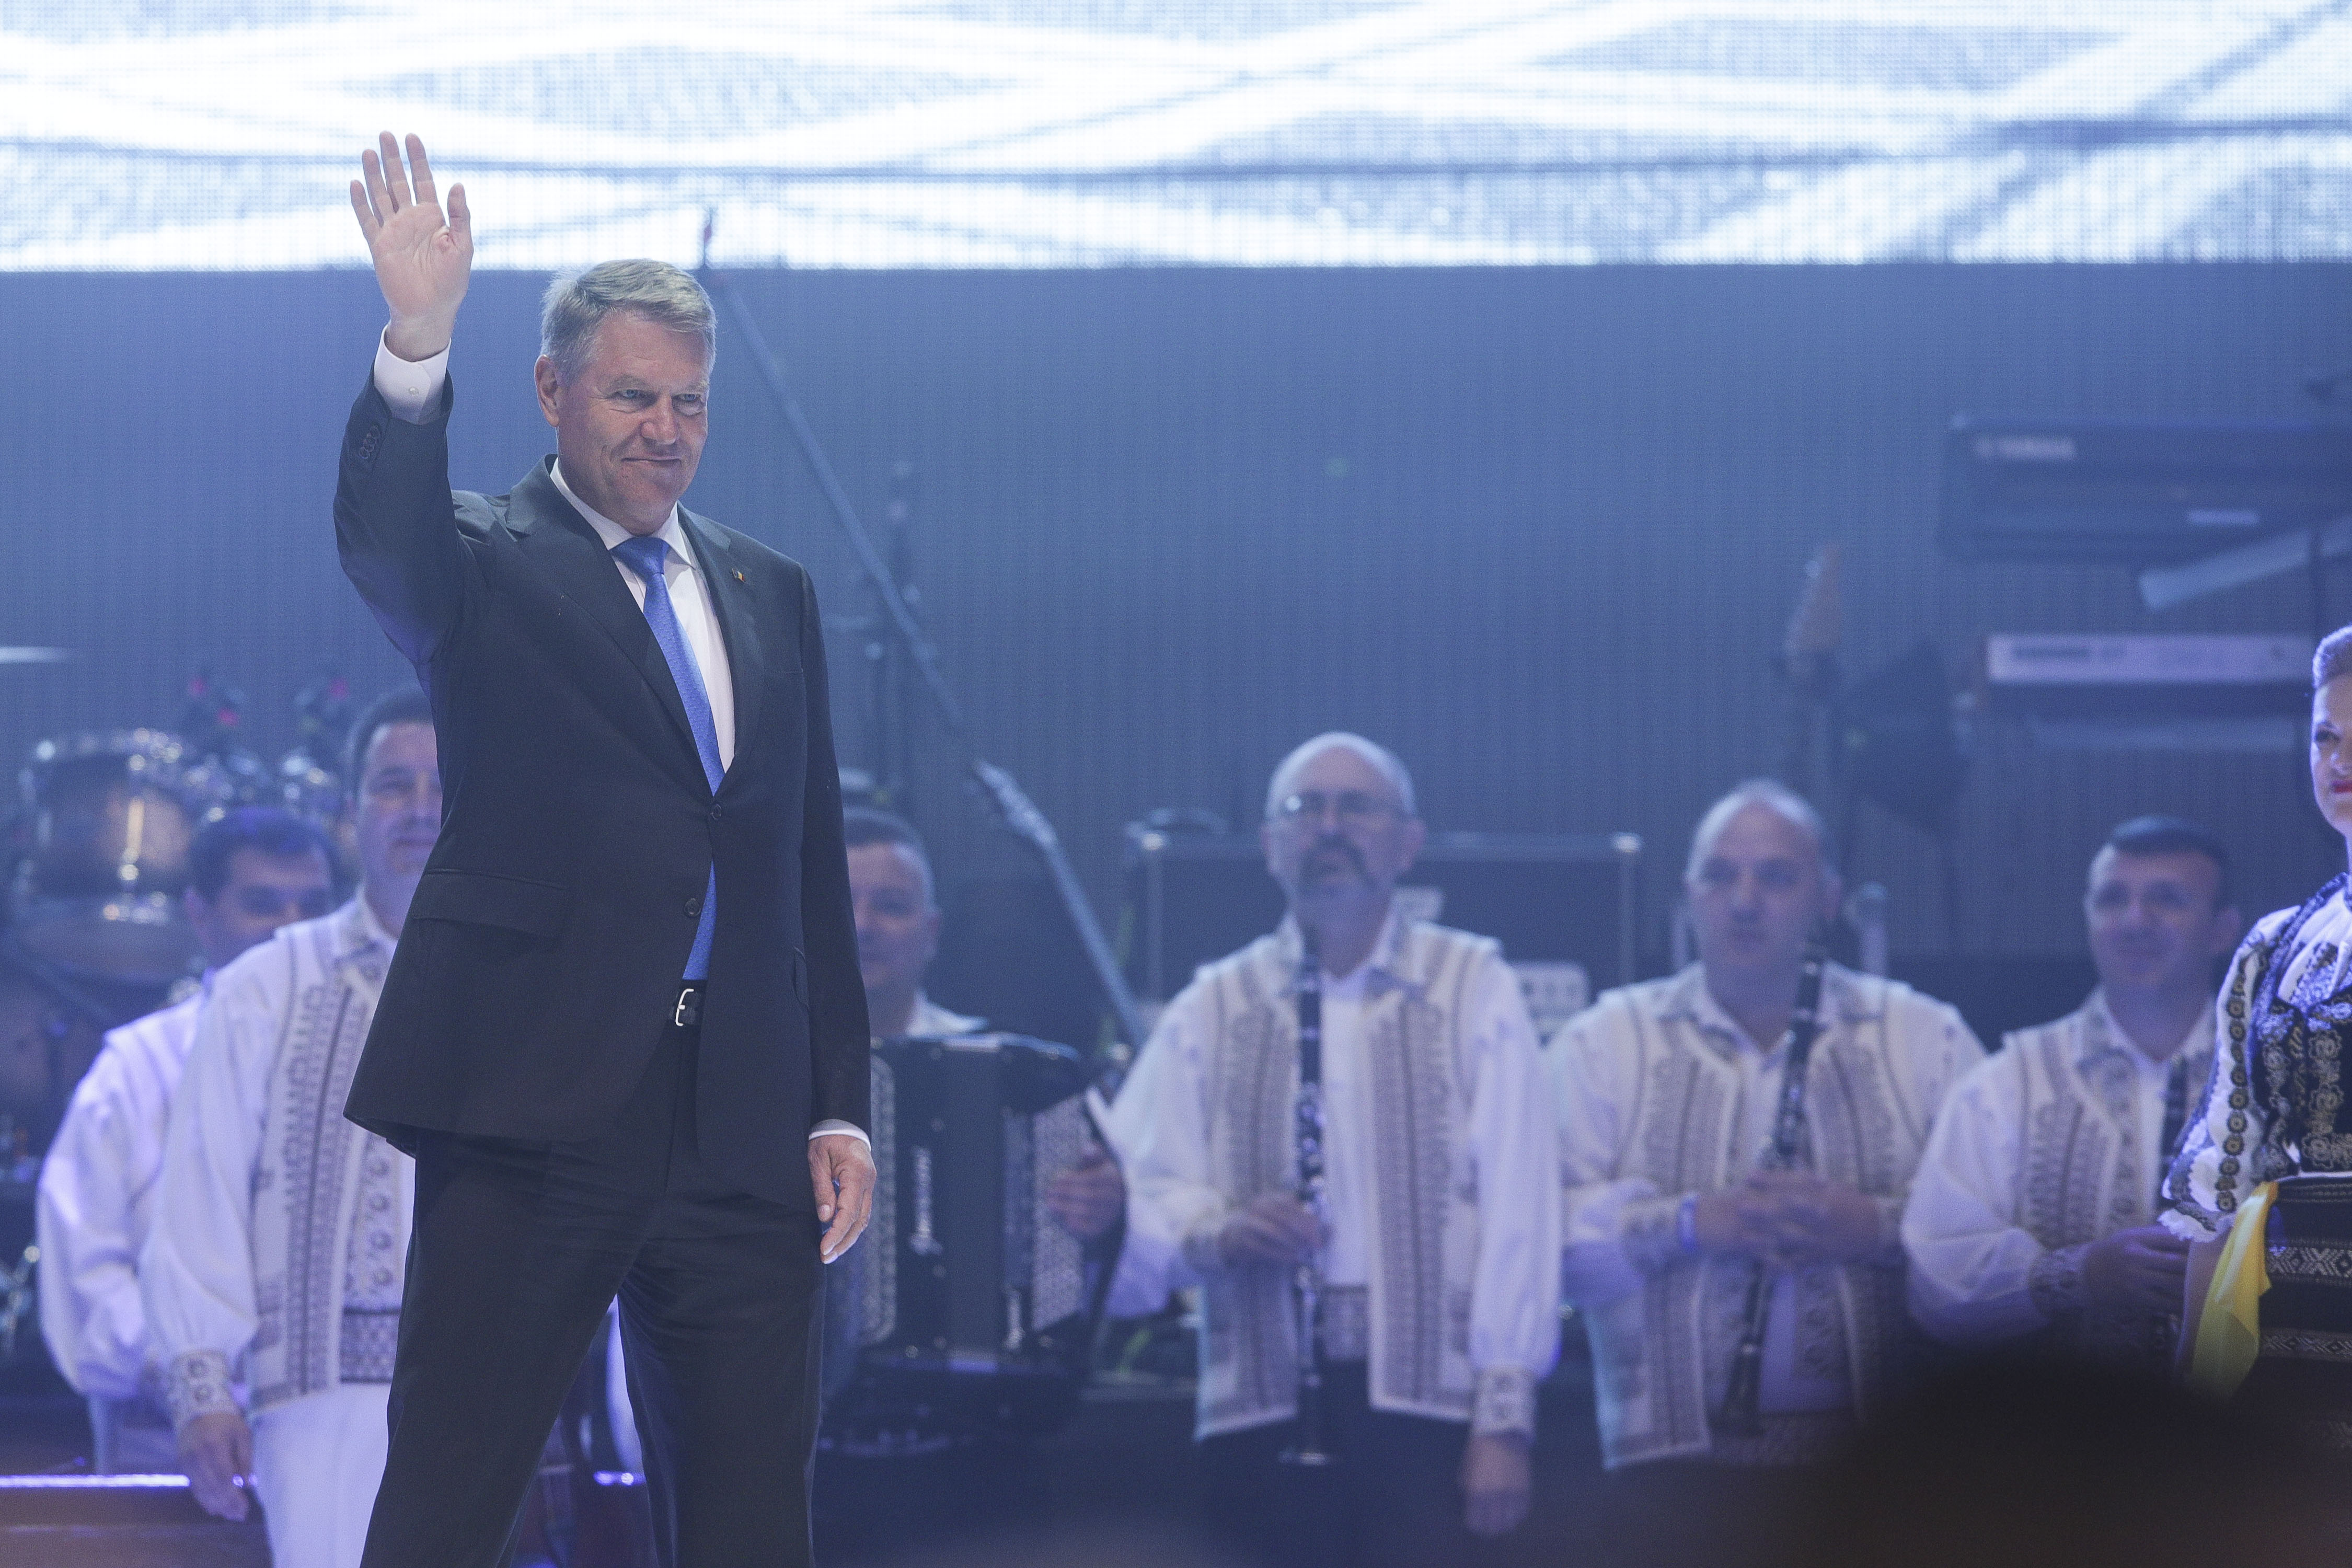 Iohannis şi Tusk, primiți cu aplauze la spectacolul organizat în Piaţa Mare din Sibiu